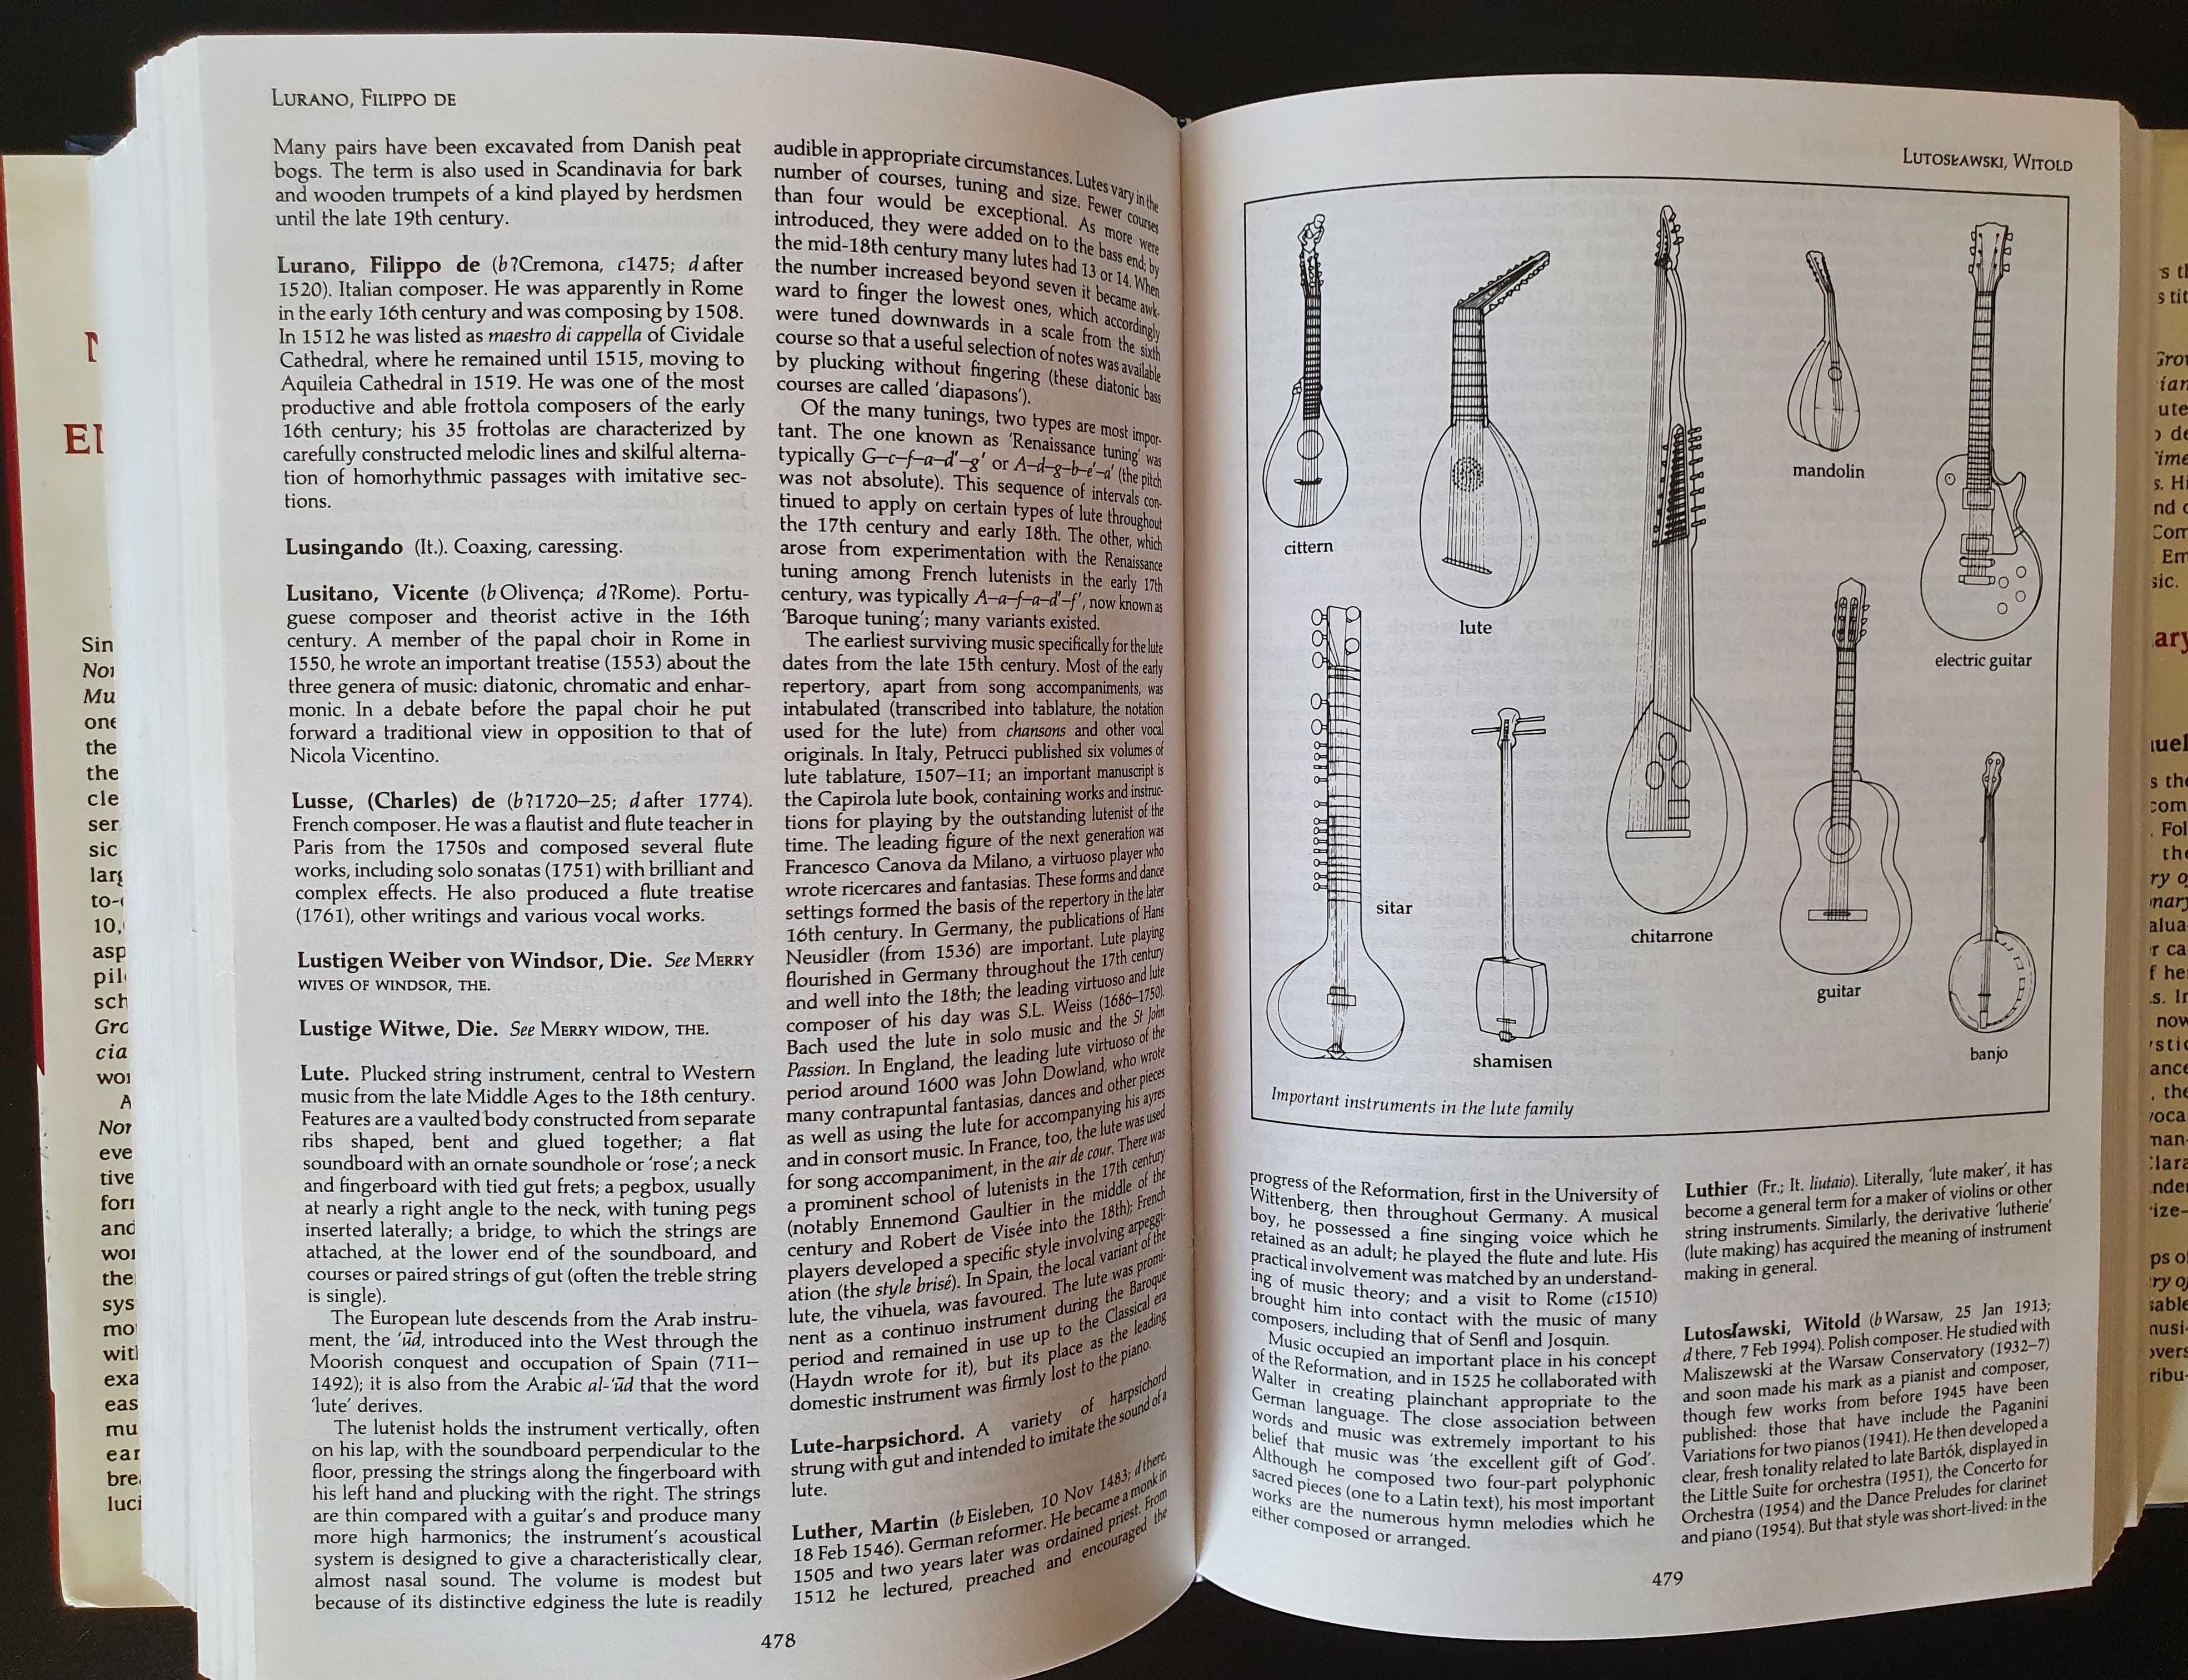 The Norton/Grove Concise Encyclopedia of Music Enciclopédia de Música